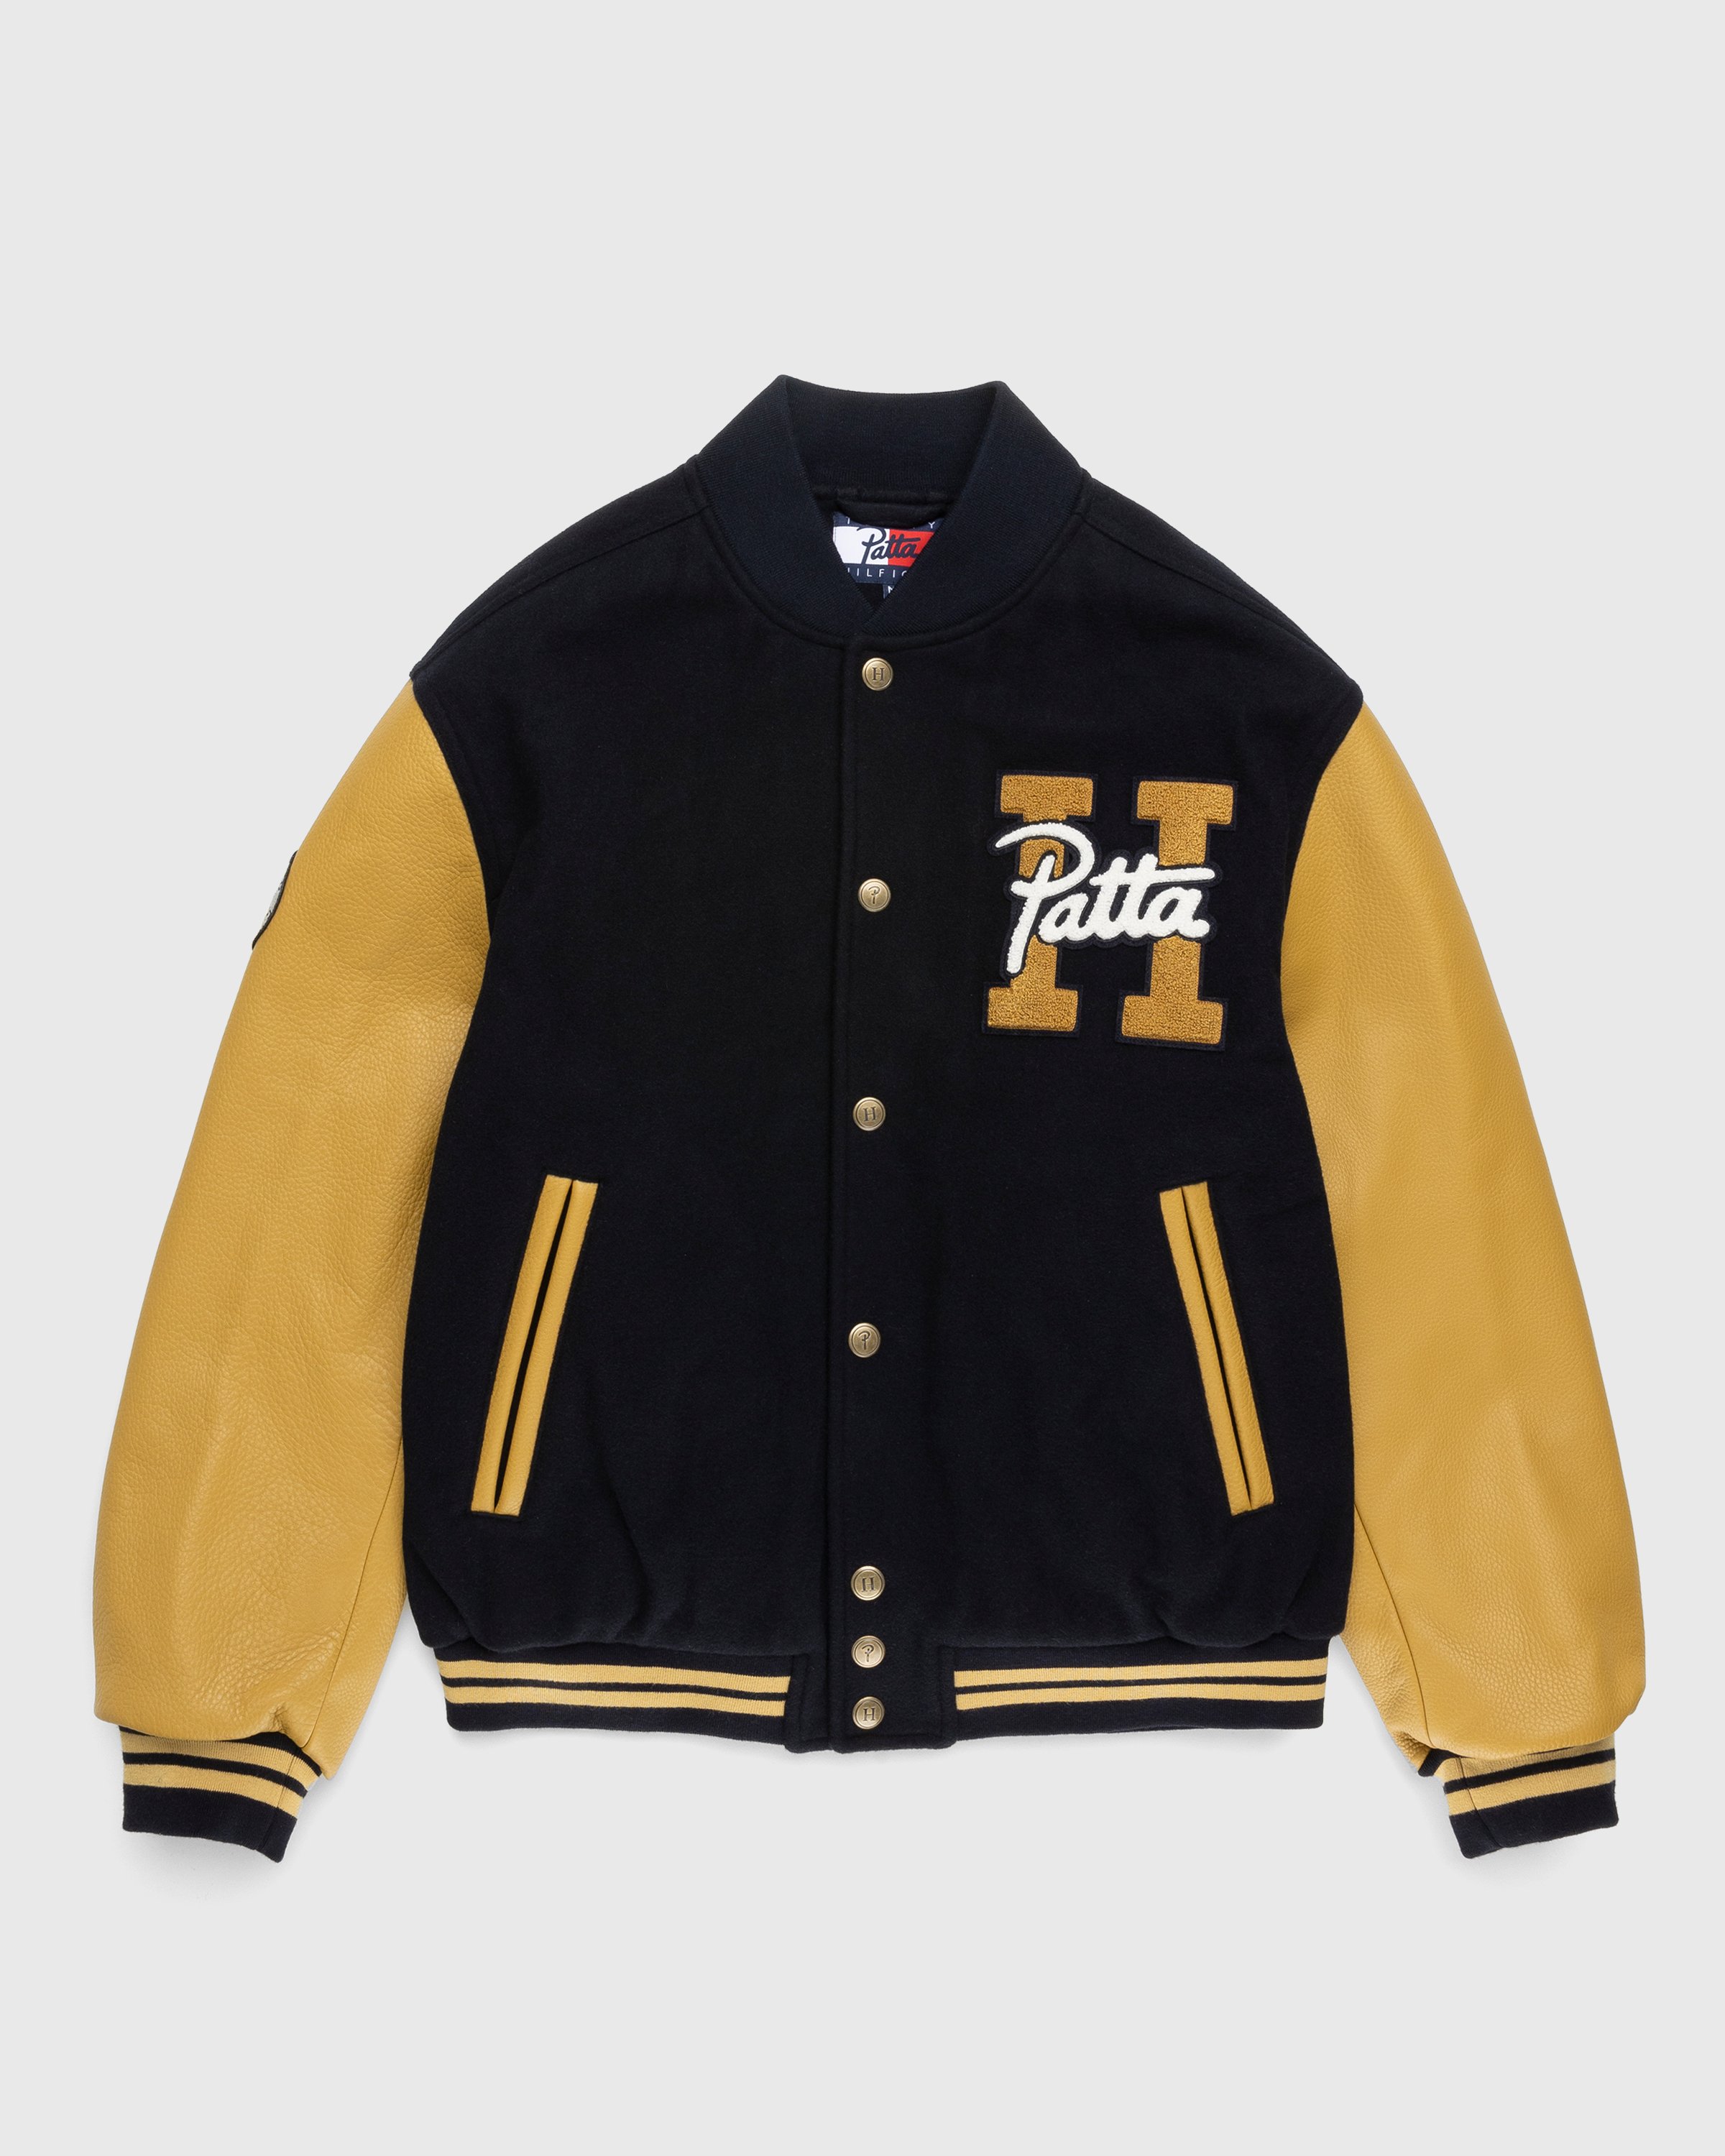 Patta x Tommy Hilfiger – Varsity Jacket Sport Navy | Highsnobiety Shop